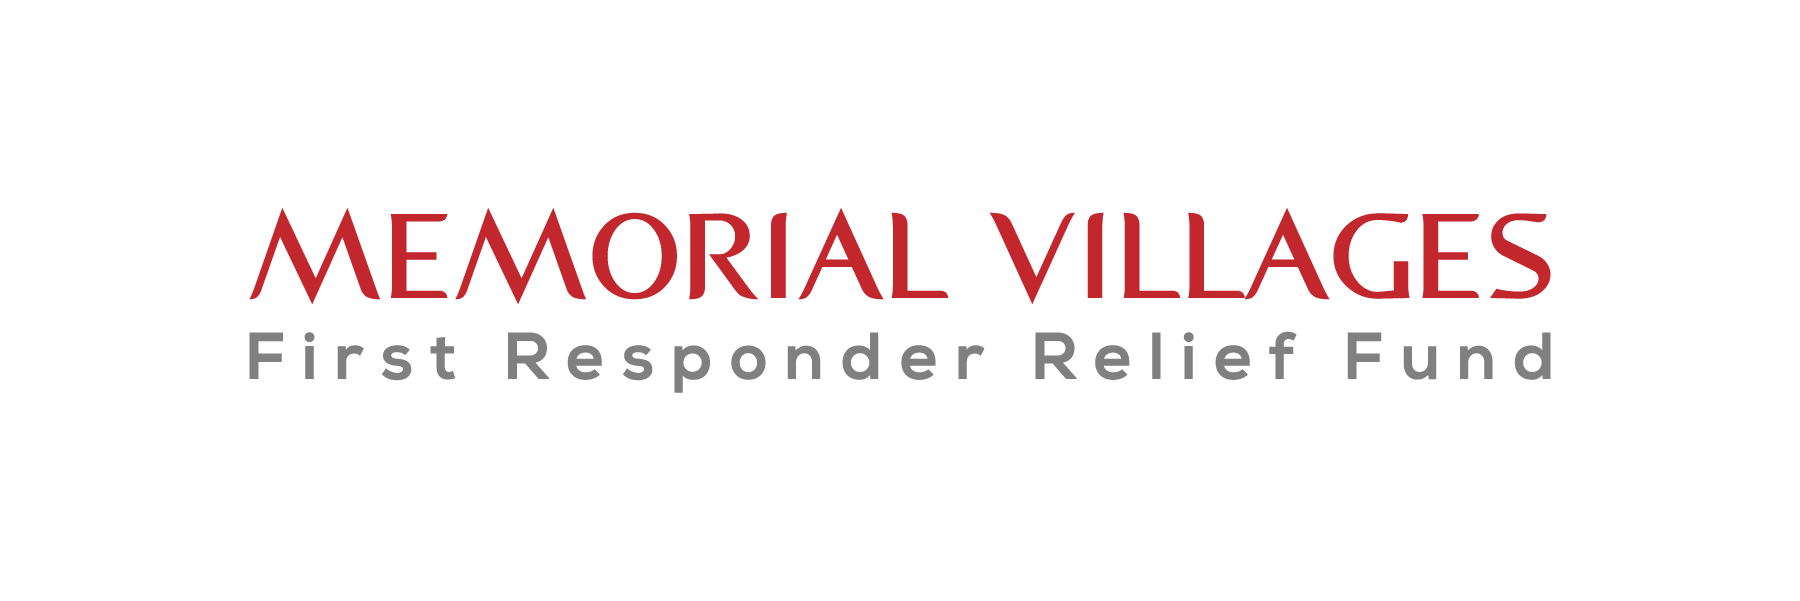 Memorial Villages First Responder Relief Fund